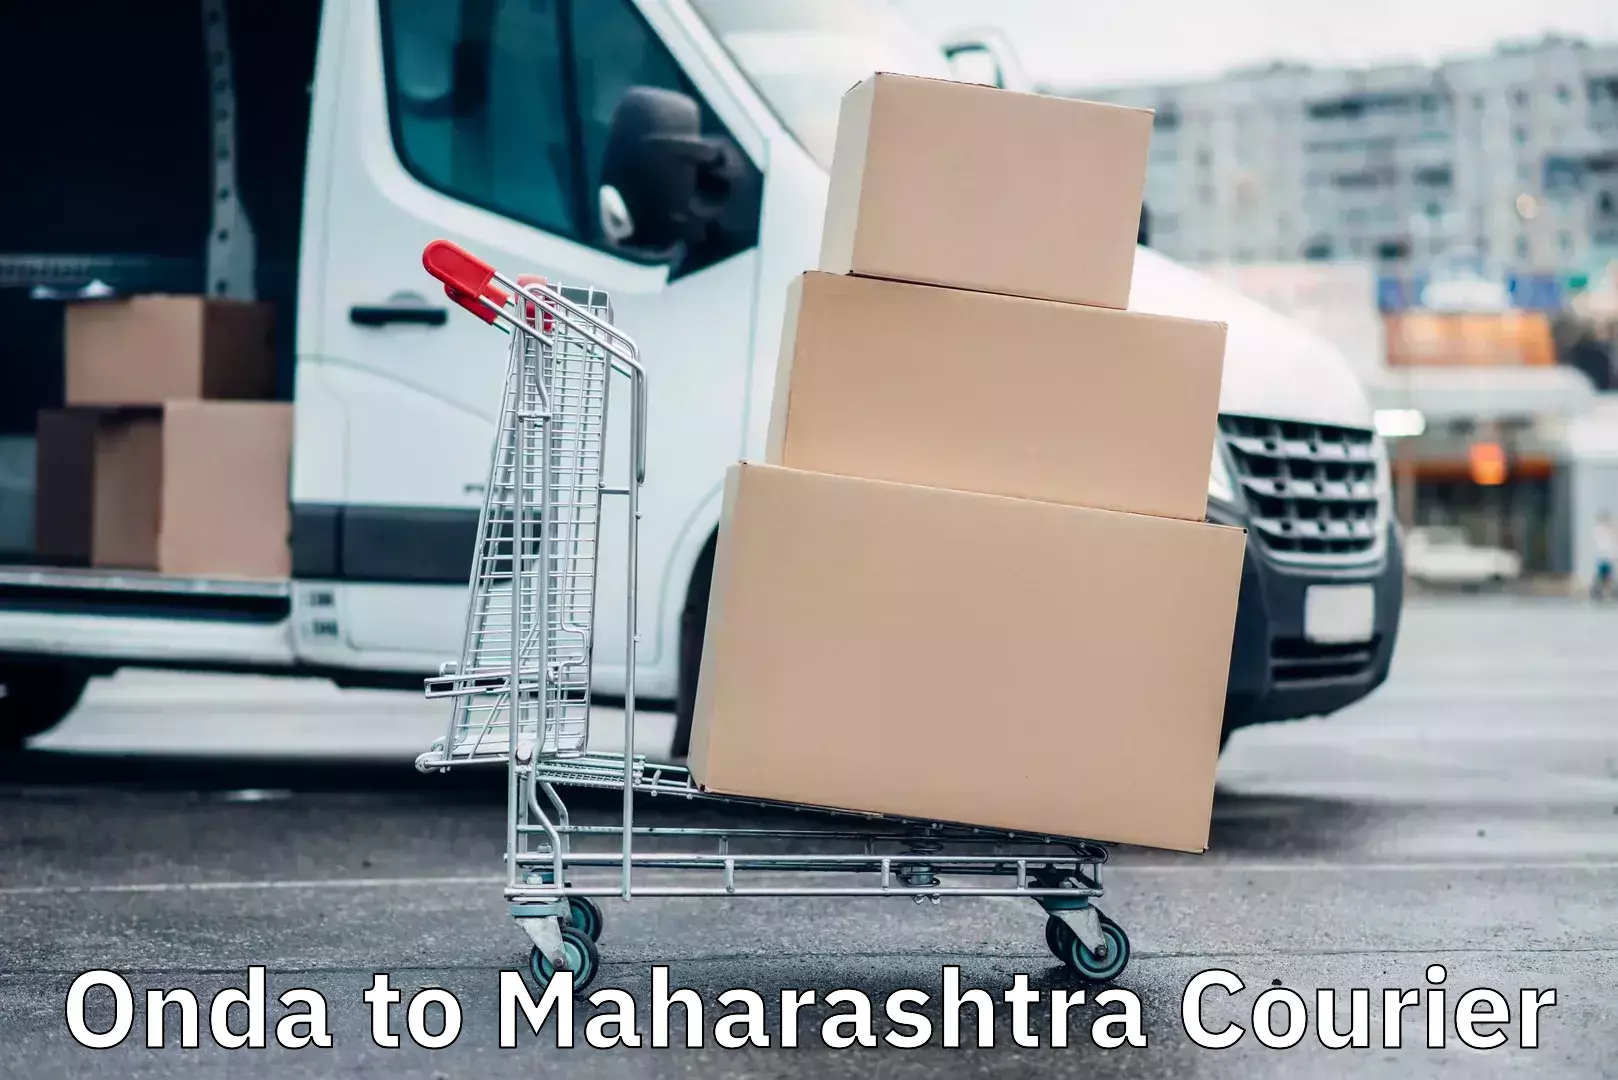 Automated parcel services Onda to Maharashtra